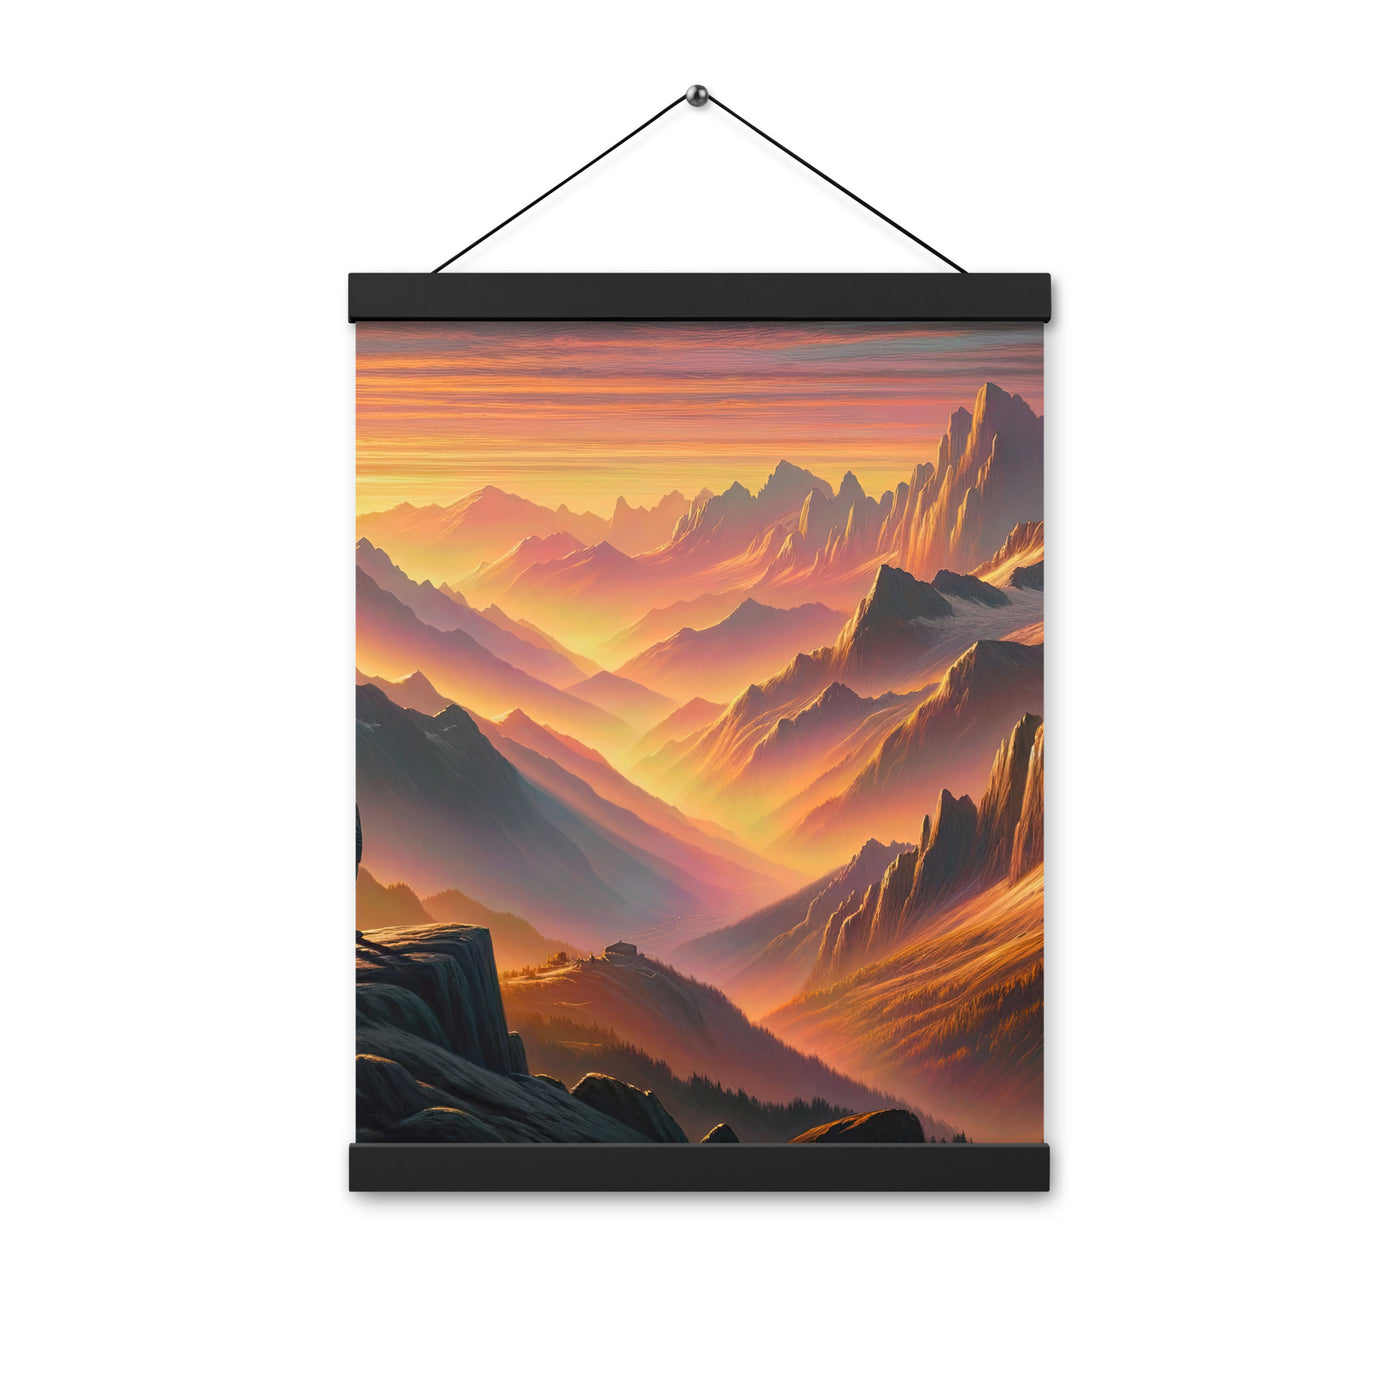 Ölgemälde der Alpen in der goldenen Stunde mit Wanderer, Orange-Rosa Bergpanorama - Premium Poster mit Aufhängung wandern xxx yyy zzz 30.5 x 40.6 cm